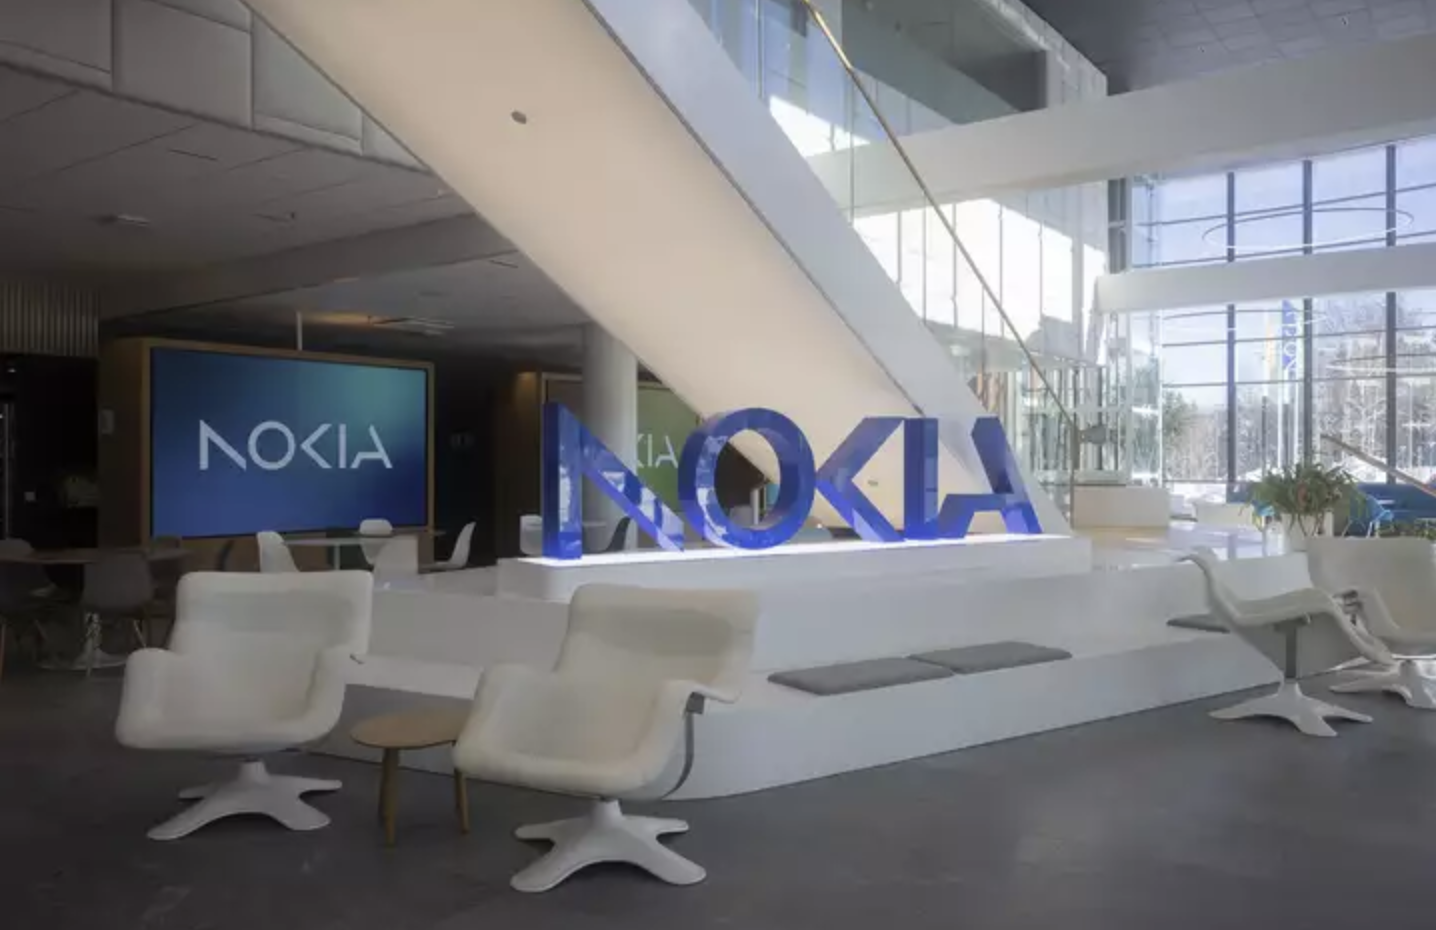 Nokia in Finland